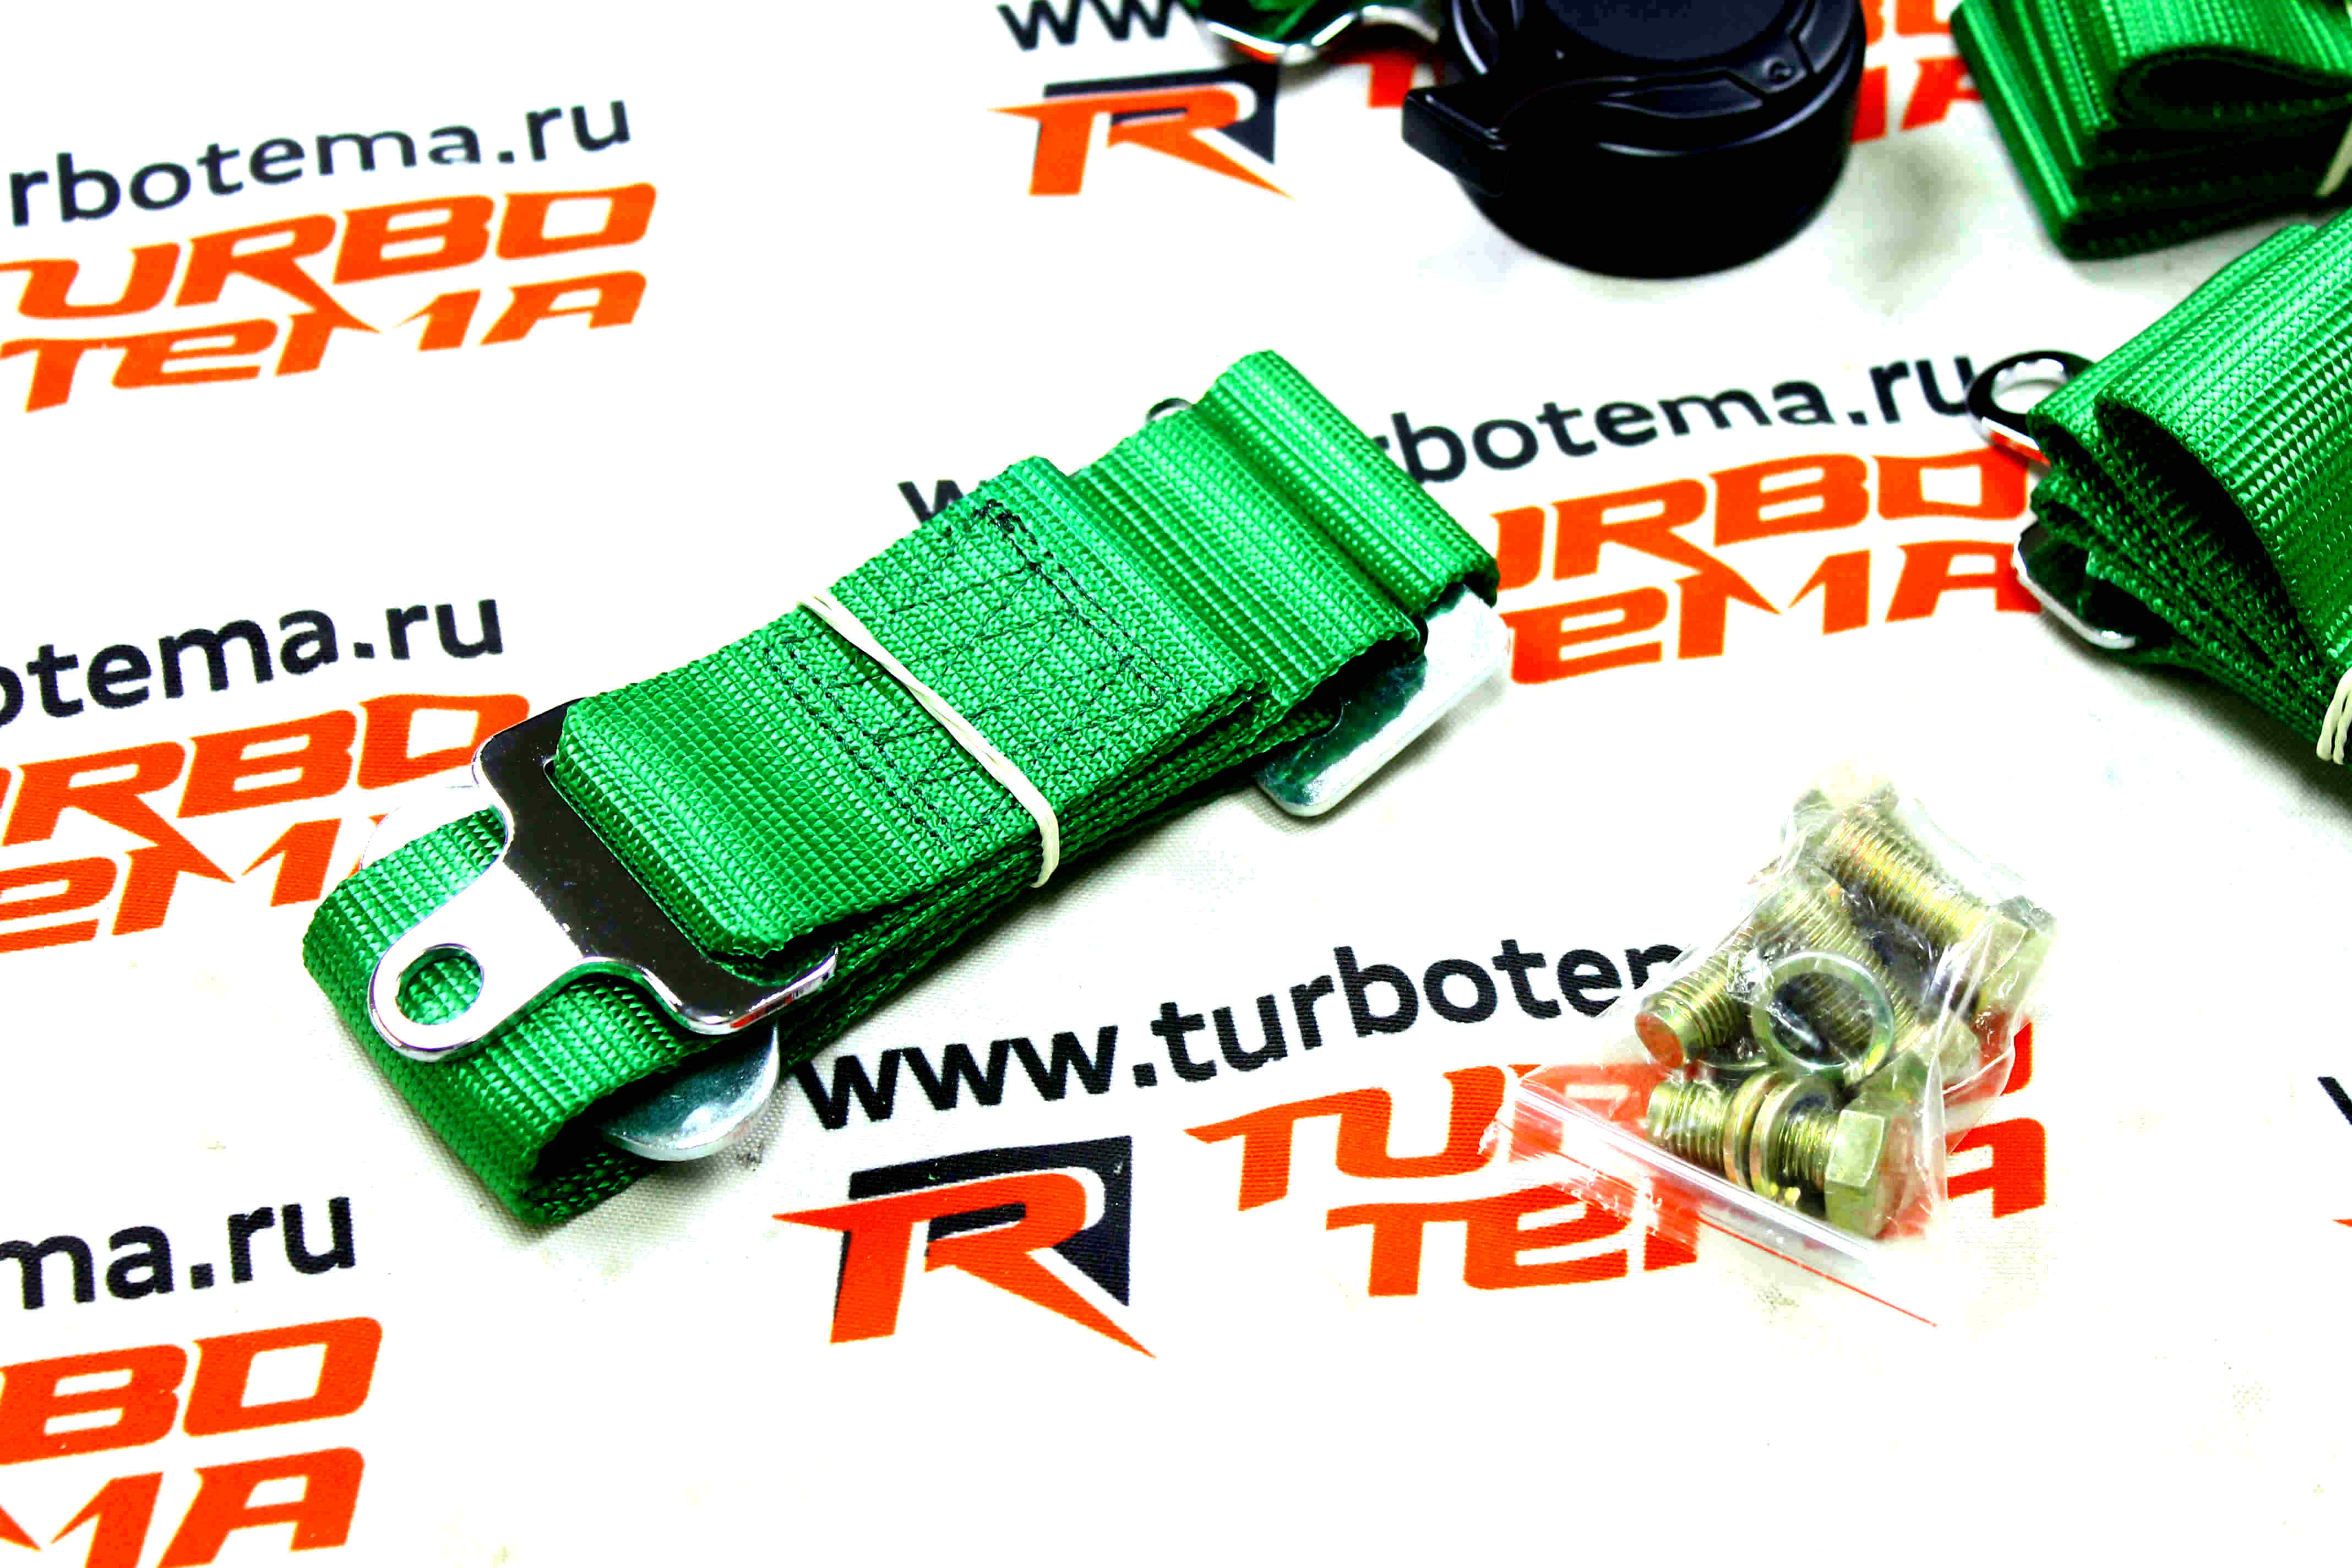 Ремни безопасности "TURBOTEMA" 5-ти точечные, 2" ширина, быстросъемные (зеленые) JBR4001-5. Фото �4